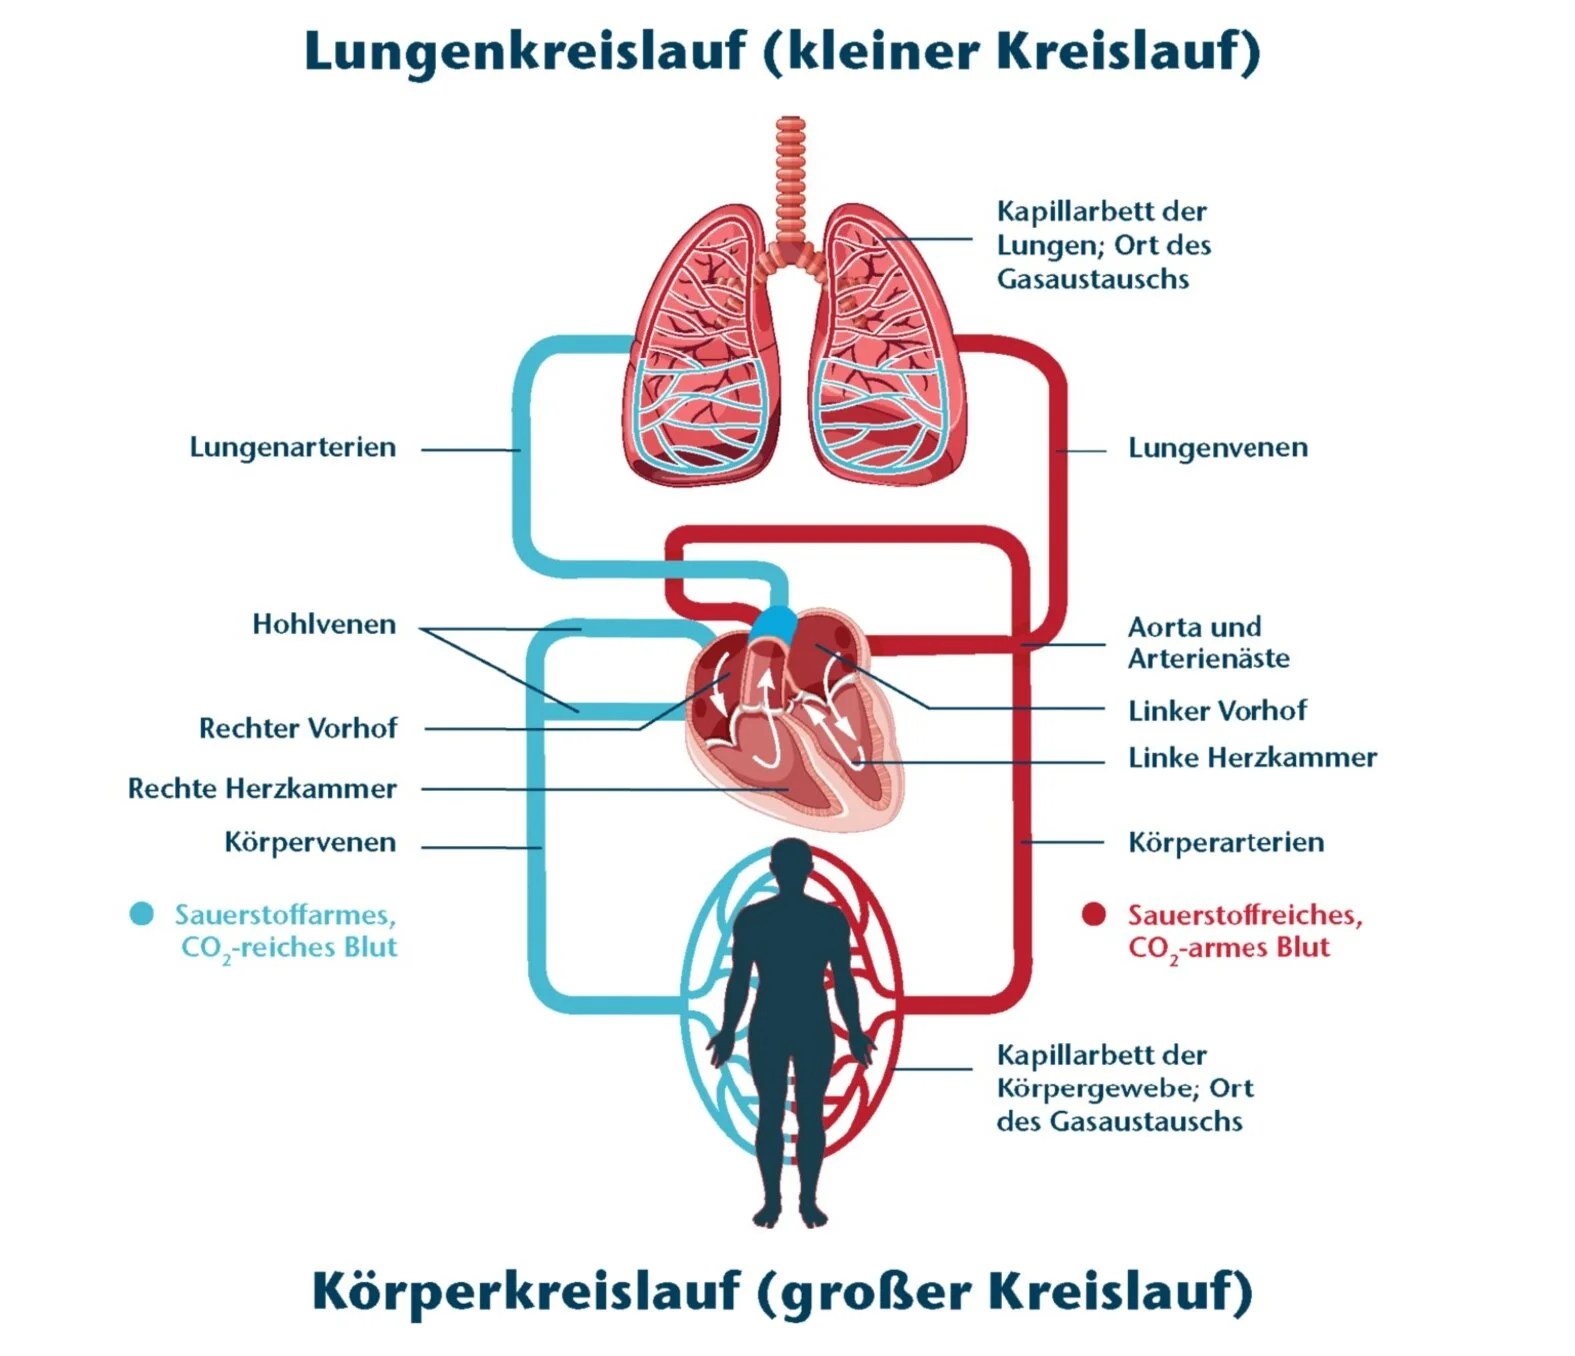 Schema Blutkreislauf: Körper- und Lungenkreislauf